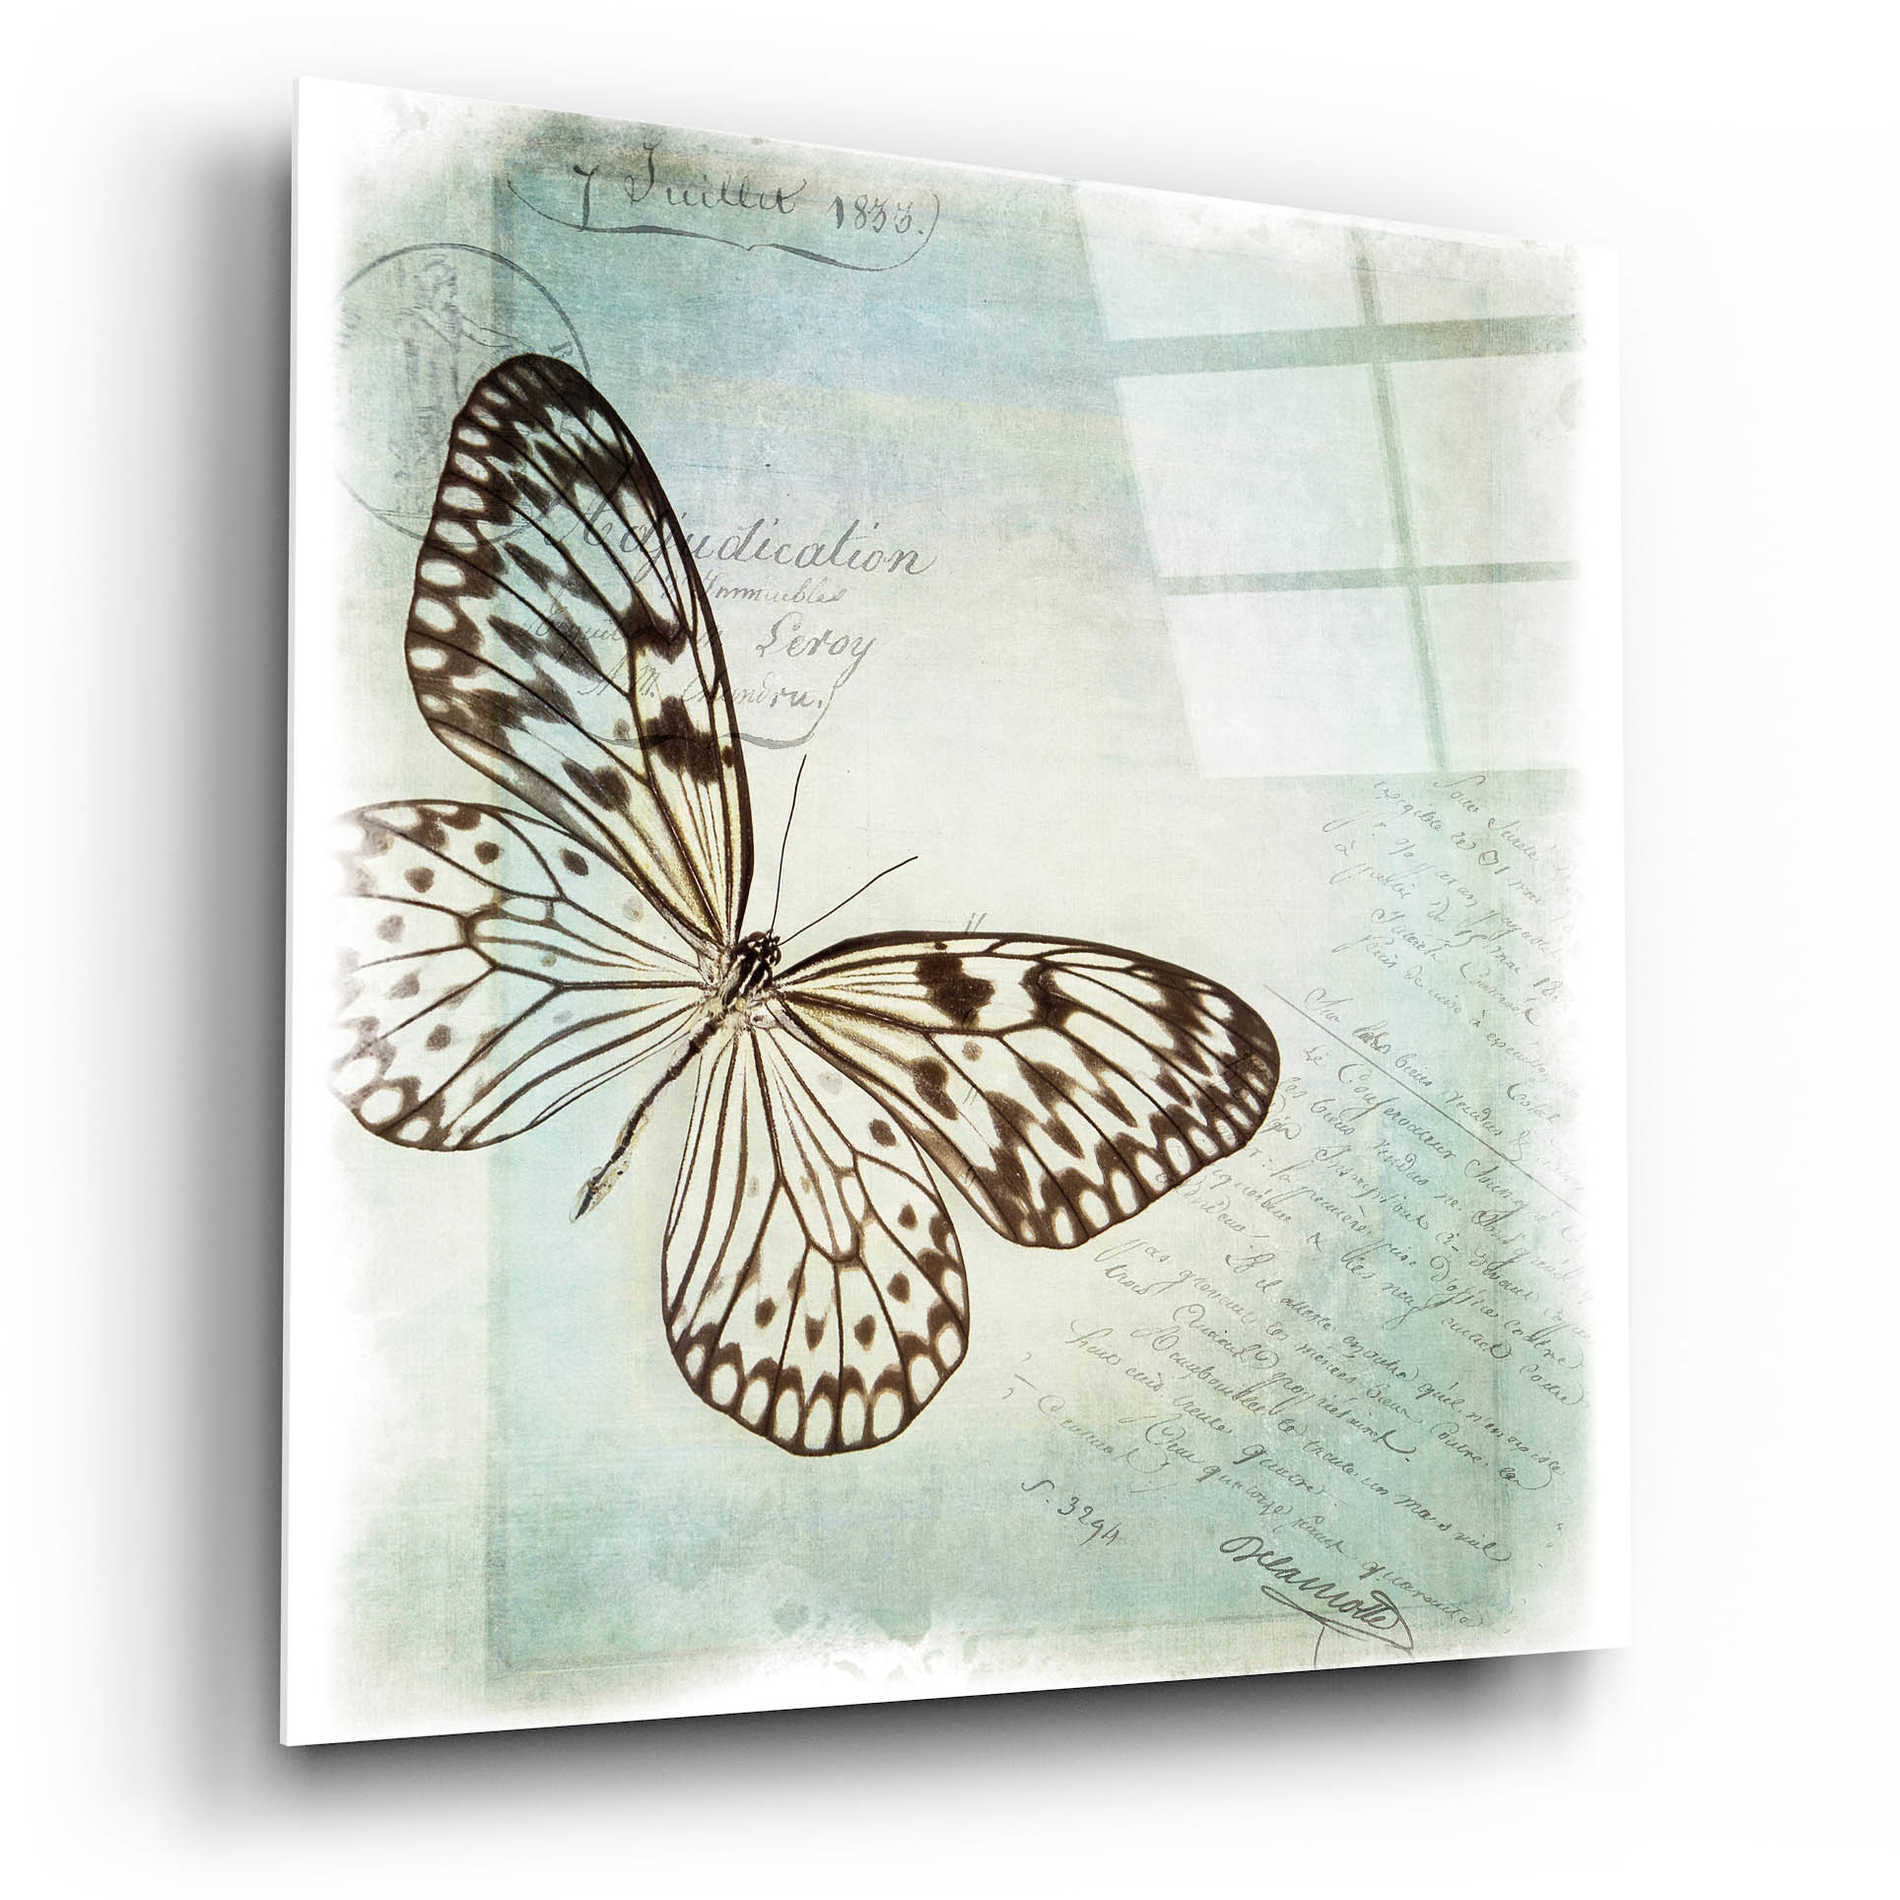 Epic Art 'Floating Butterfly IV' by Debra Van Swearingen, Acrylic Glass Wall Art,12x12